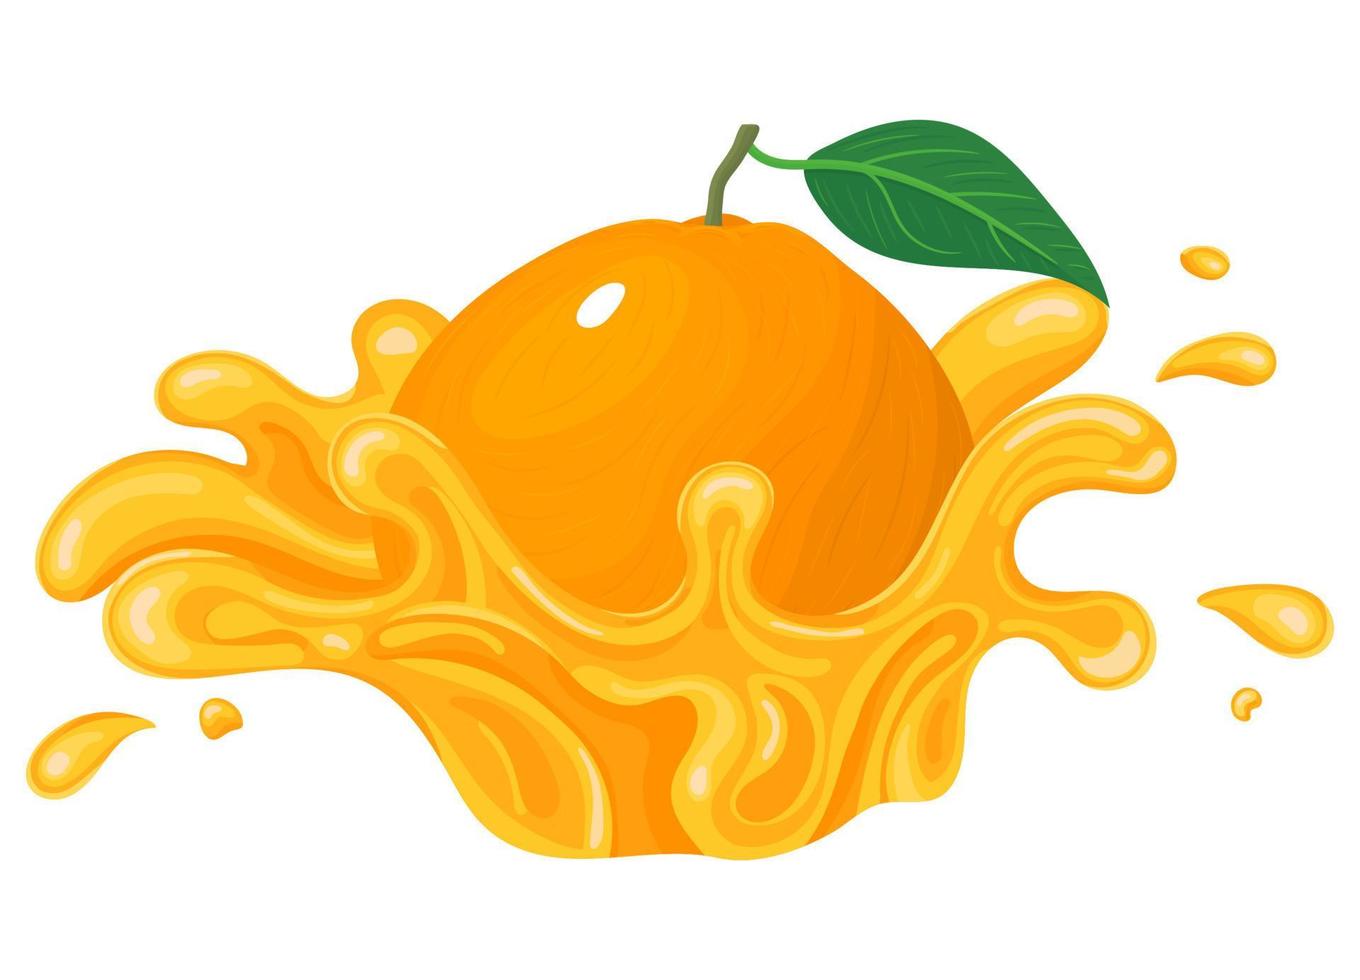 explosão de respingo de suco de laranja, mandarim ou tagerine brilhante fresco isolado no fundo branco. suco de frutas de verão. estilo de desenho animado. ilustração vetorial para qualquer projeto. vetor